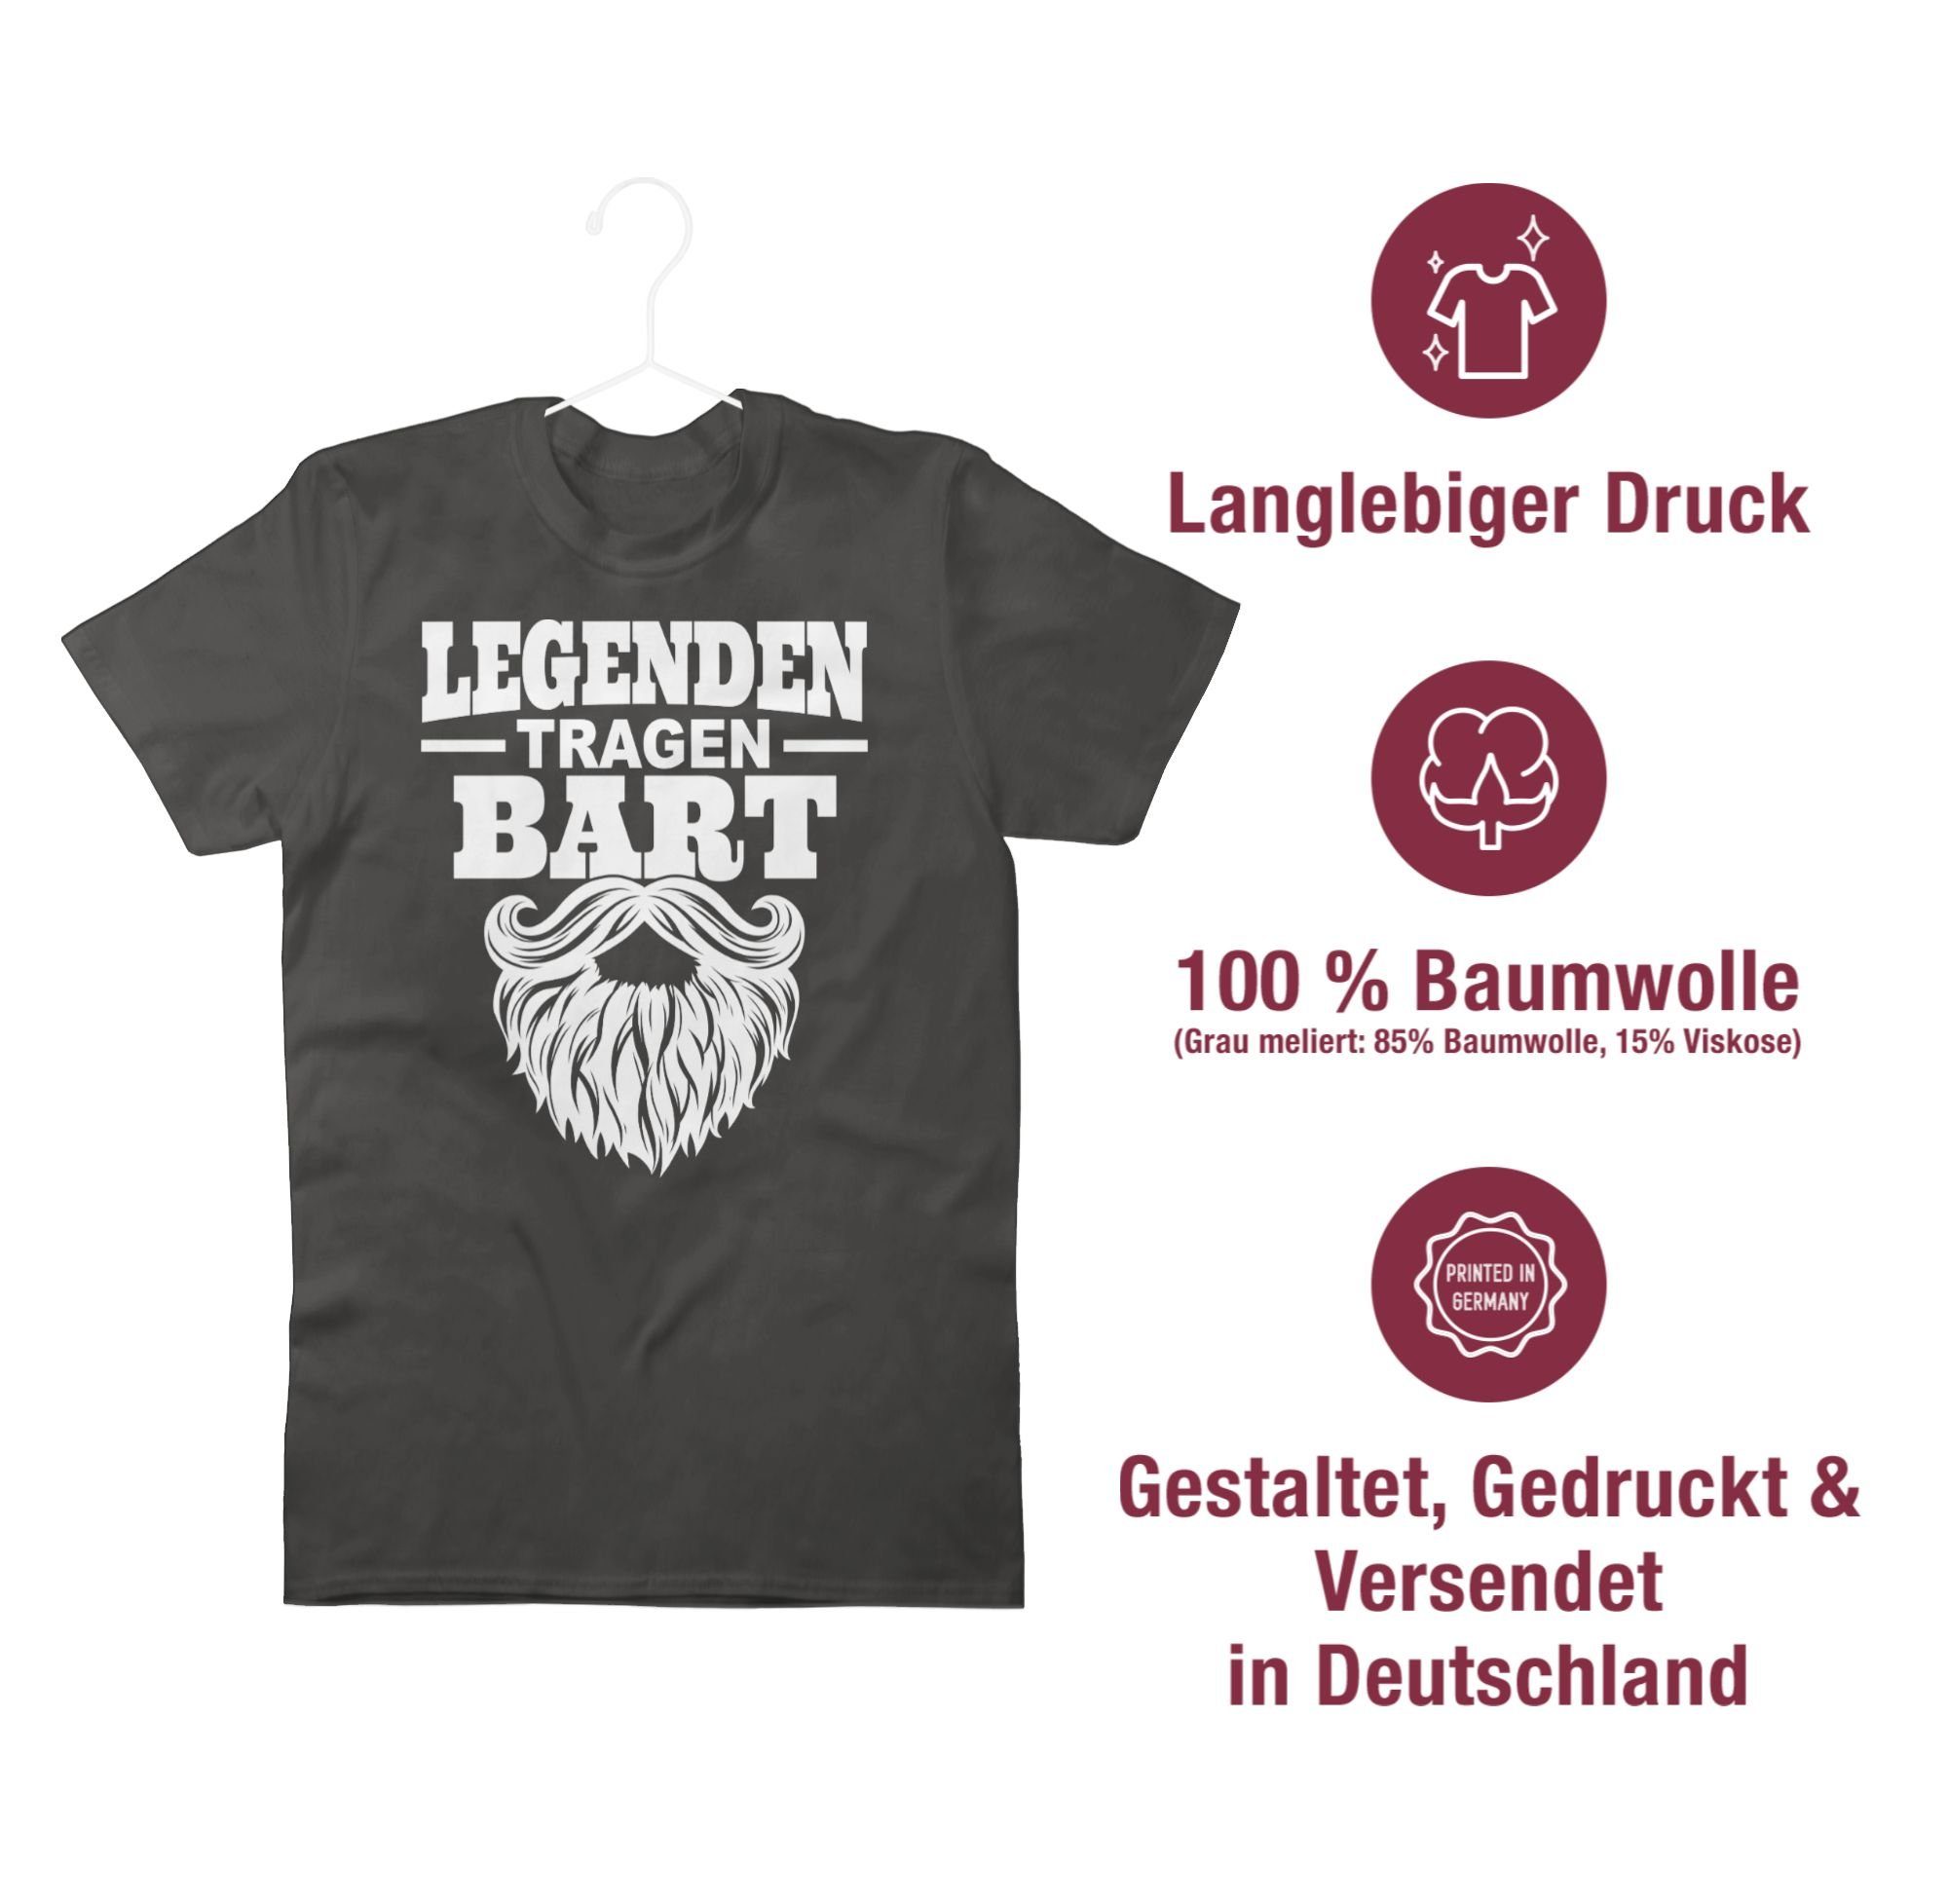 Statement Sprüche Shirtracer T-Shirt mit Legenden Spruch 02 weiß Dunkelgrau tragen Bart